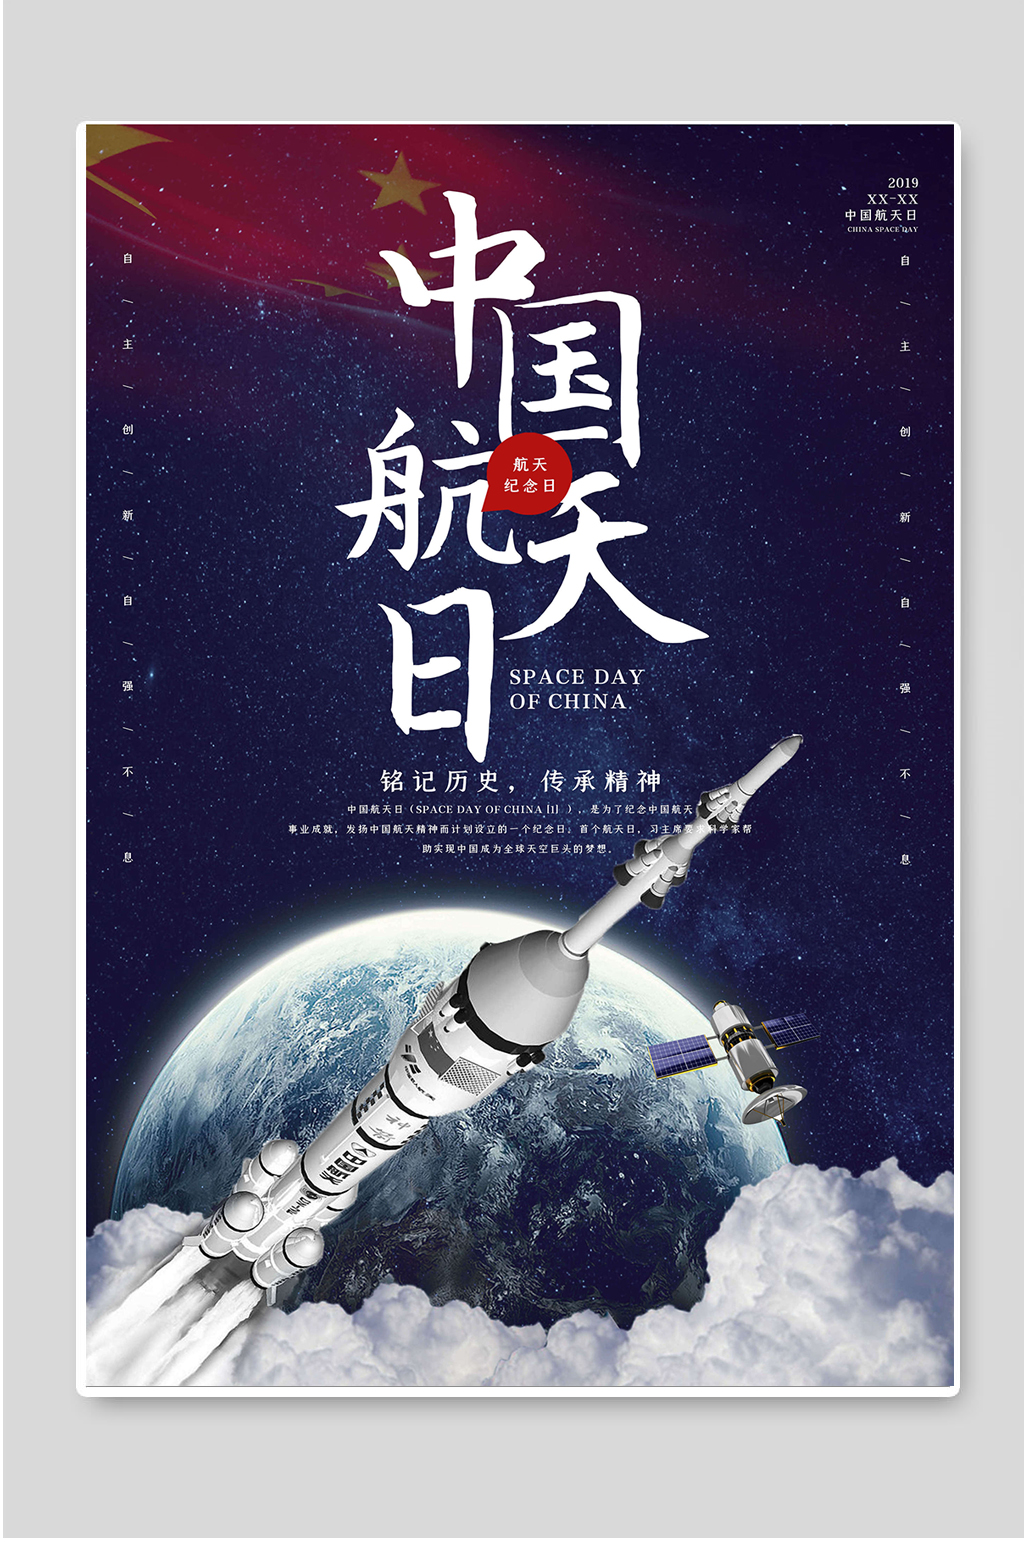 中国航天日宣传标语图片